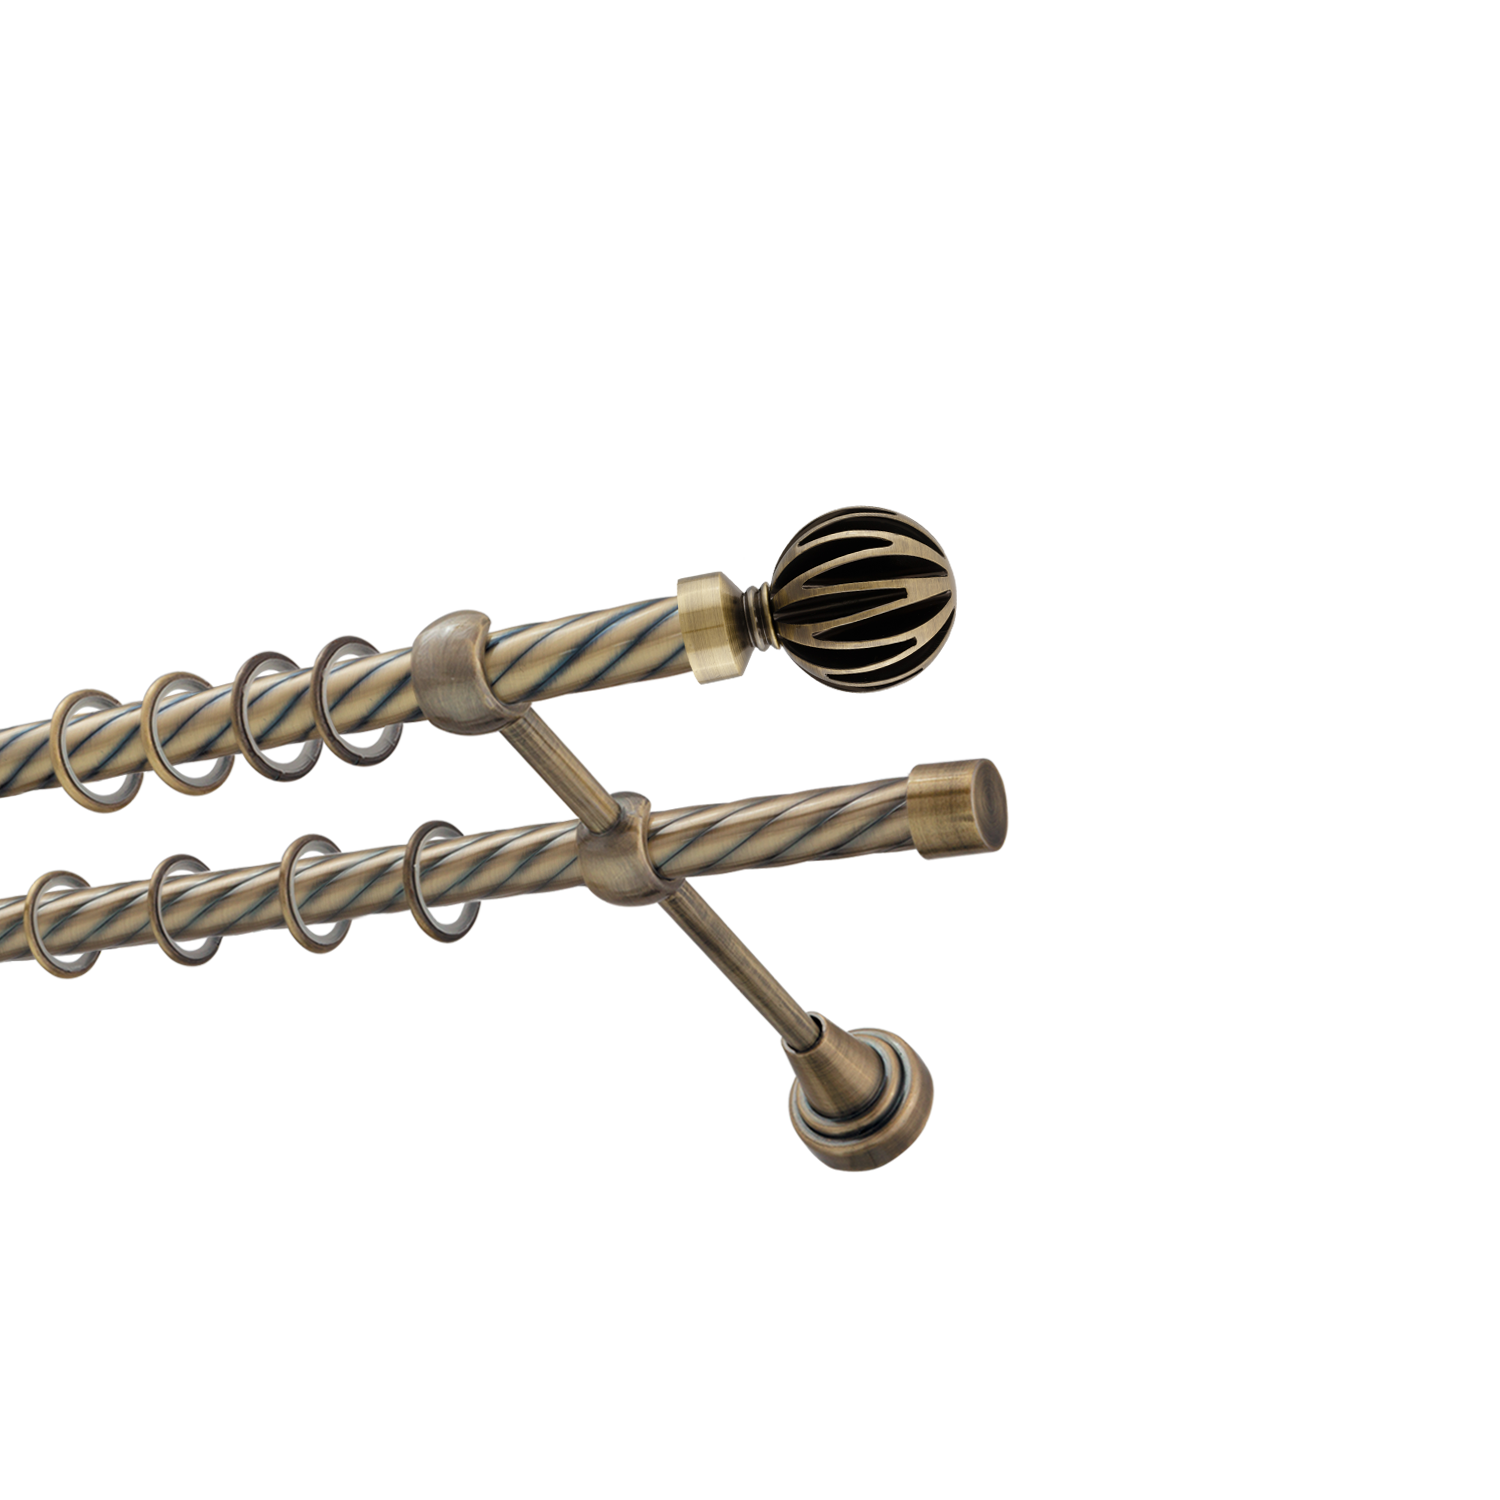 Металлический карниз для штор Шафран, двухрядный 16/16 мм, бронза, витая штанга, длина 180 см - фото Wikidecor.ru